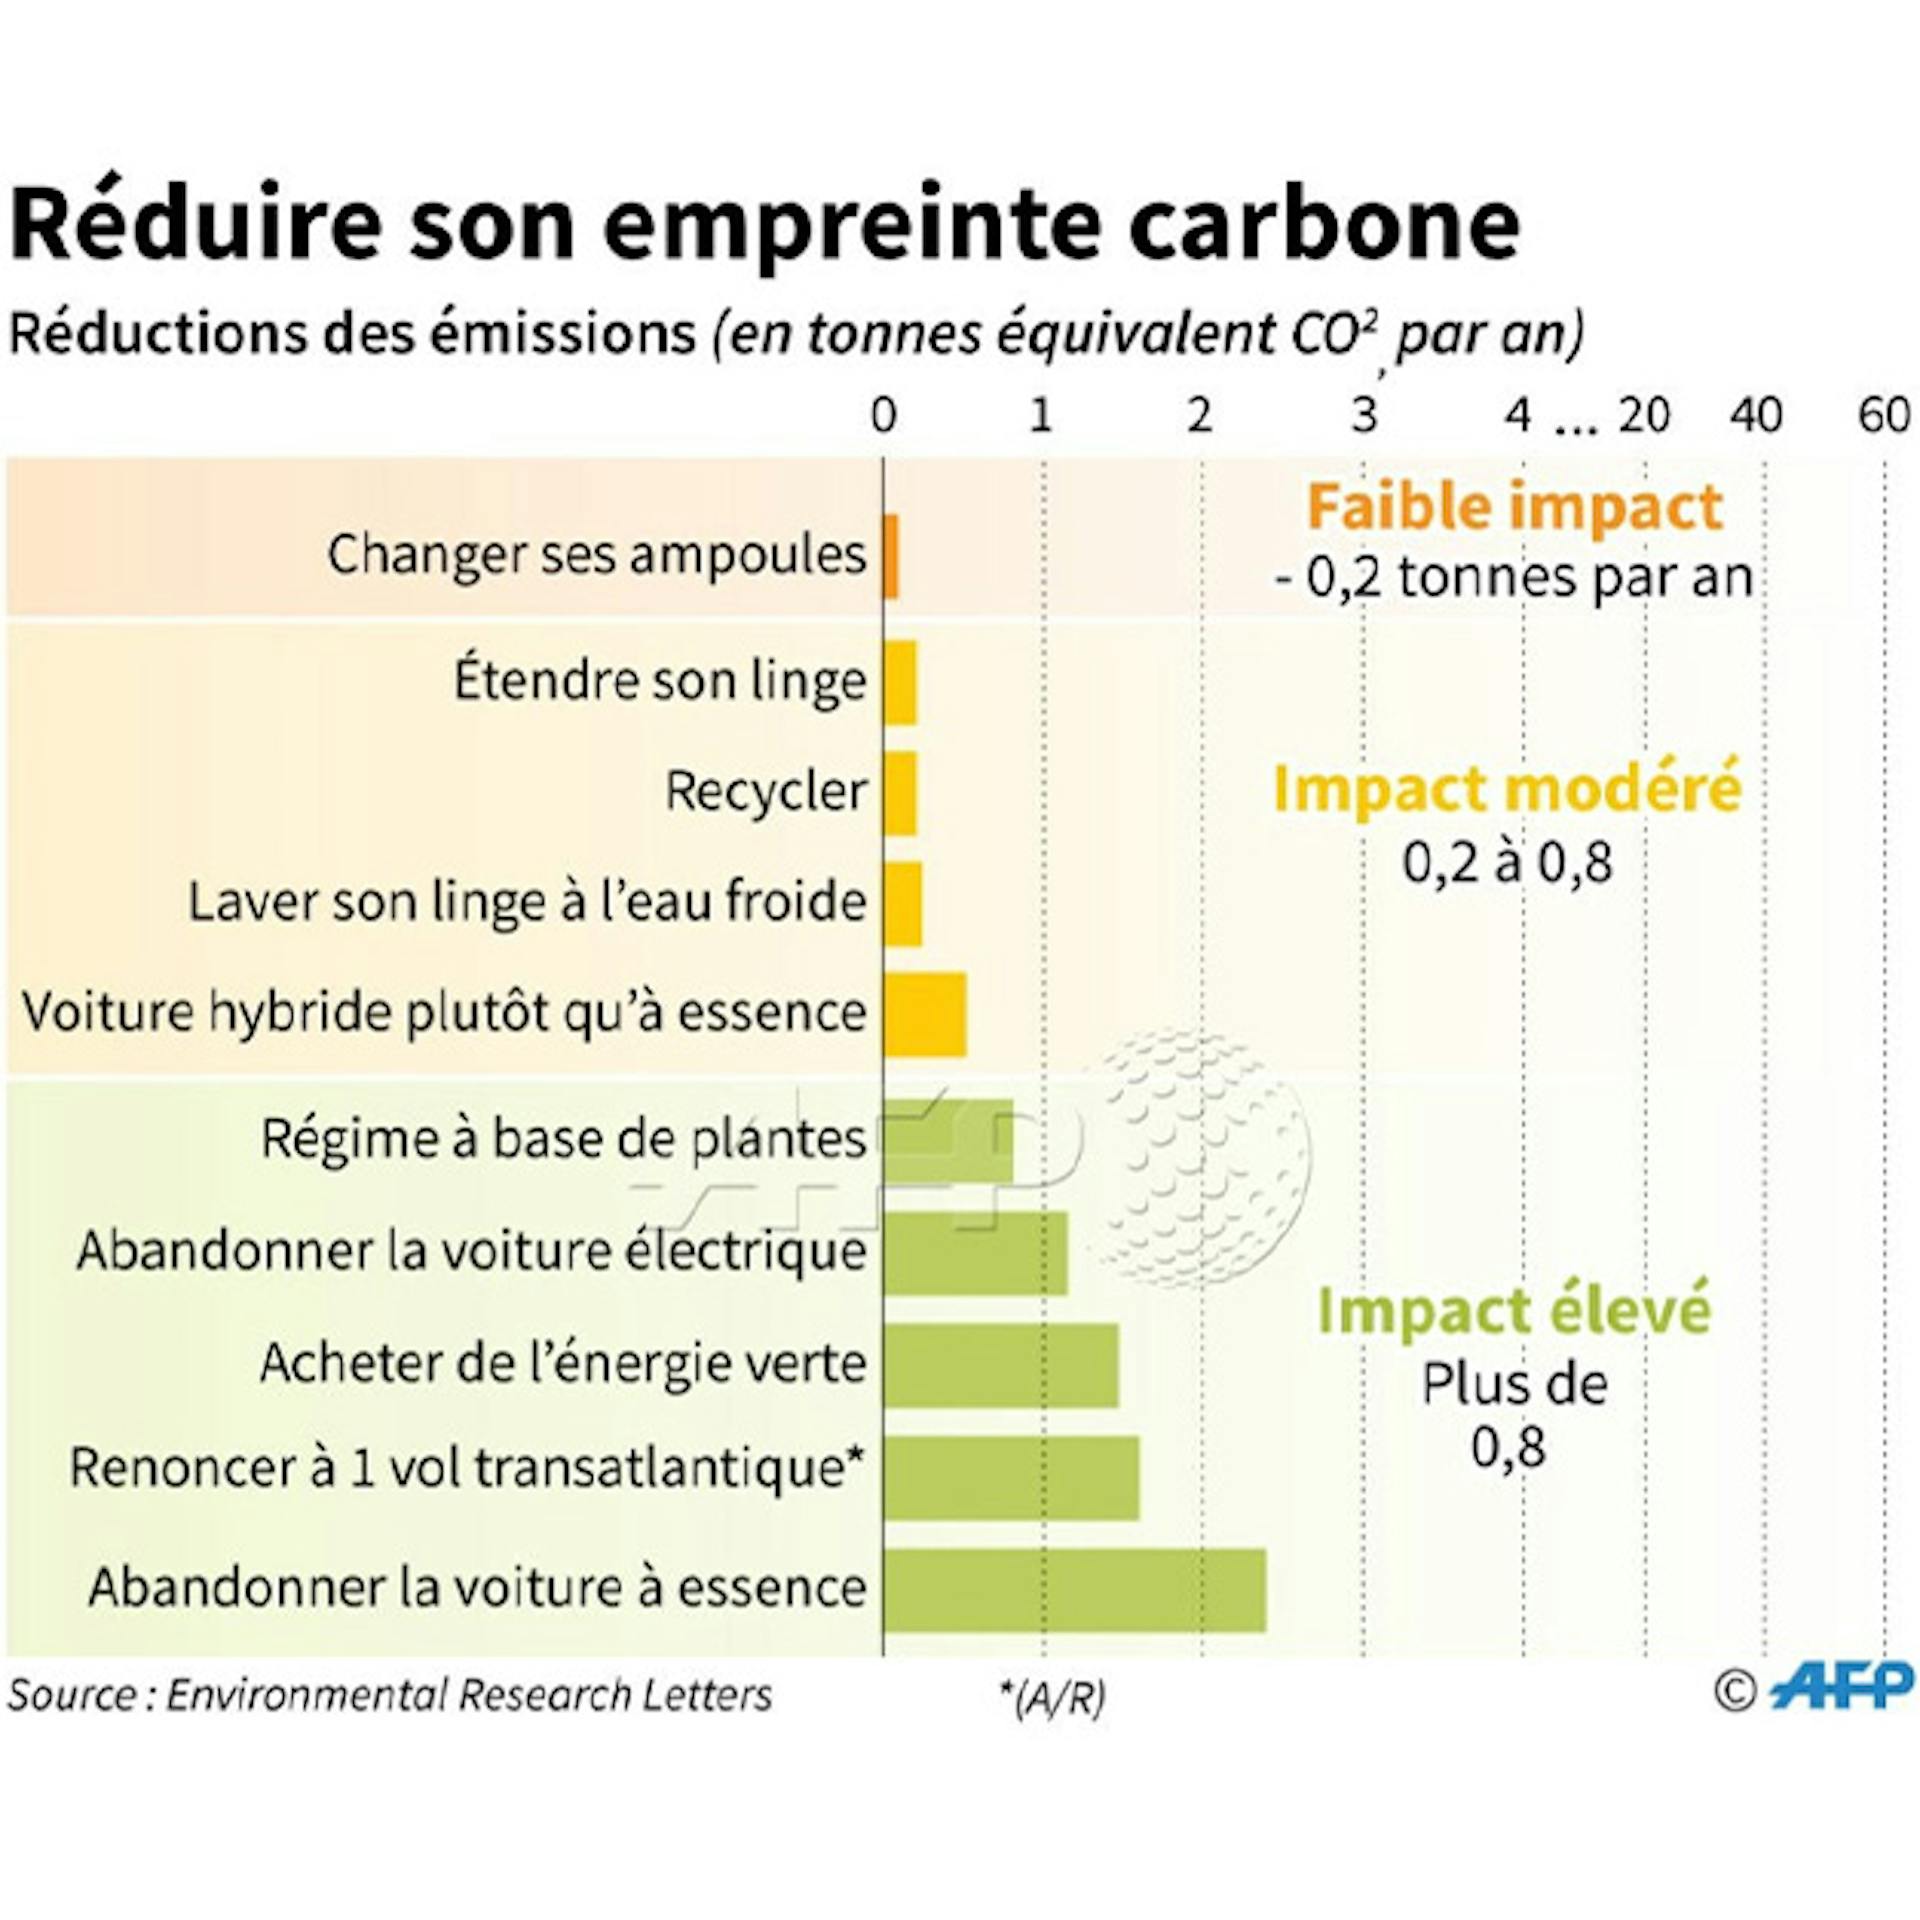 Le classement de l'AFP pour réduire son empreinte carbone